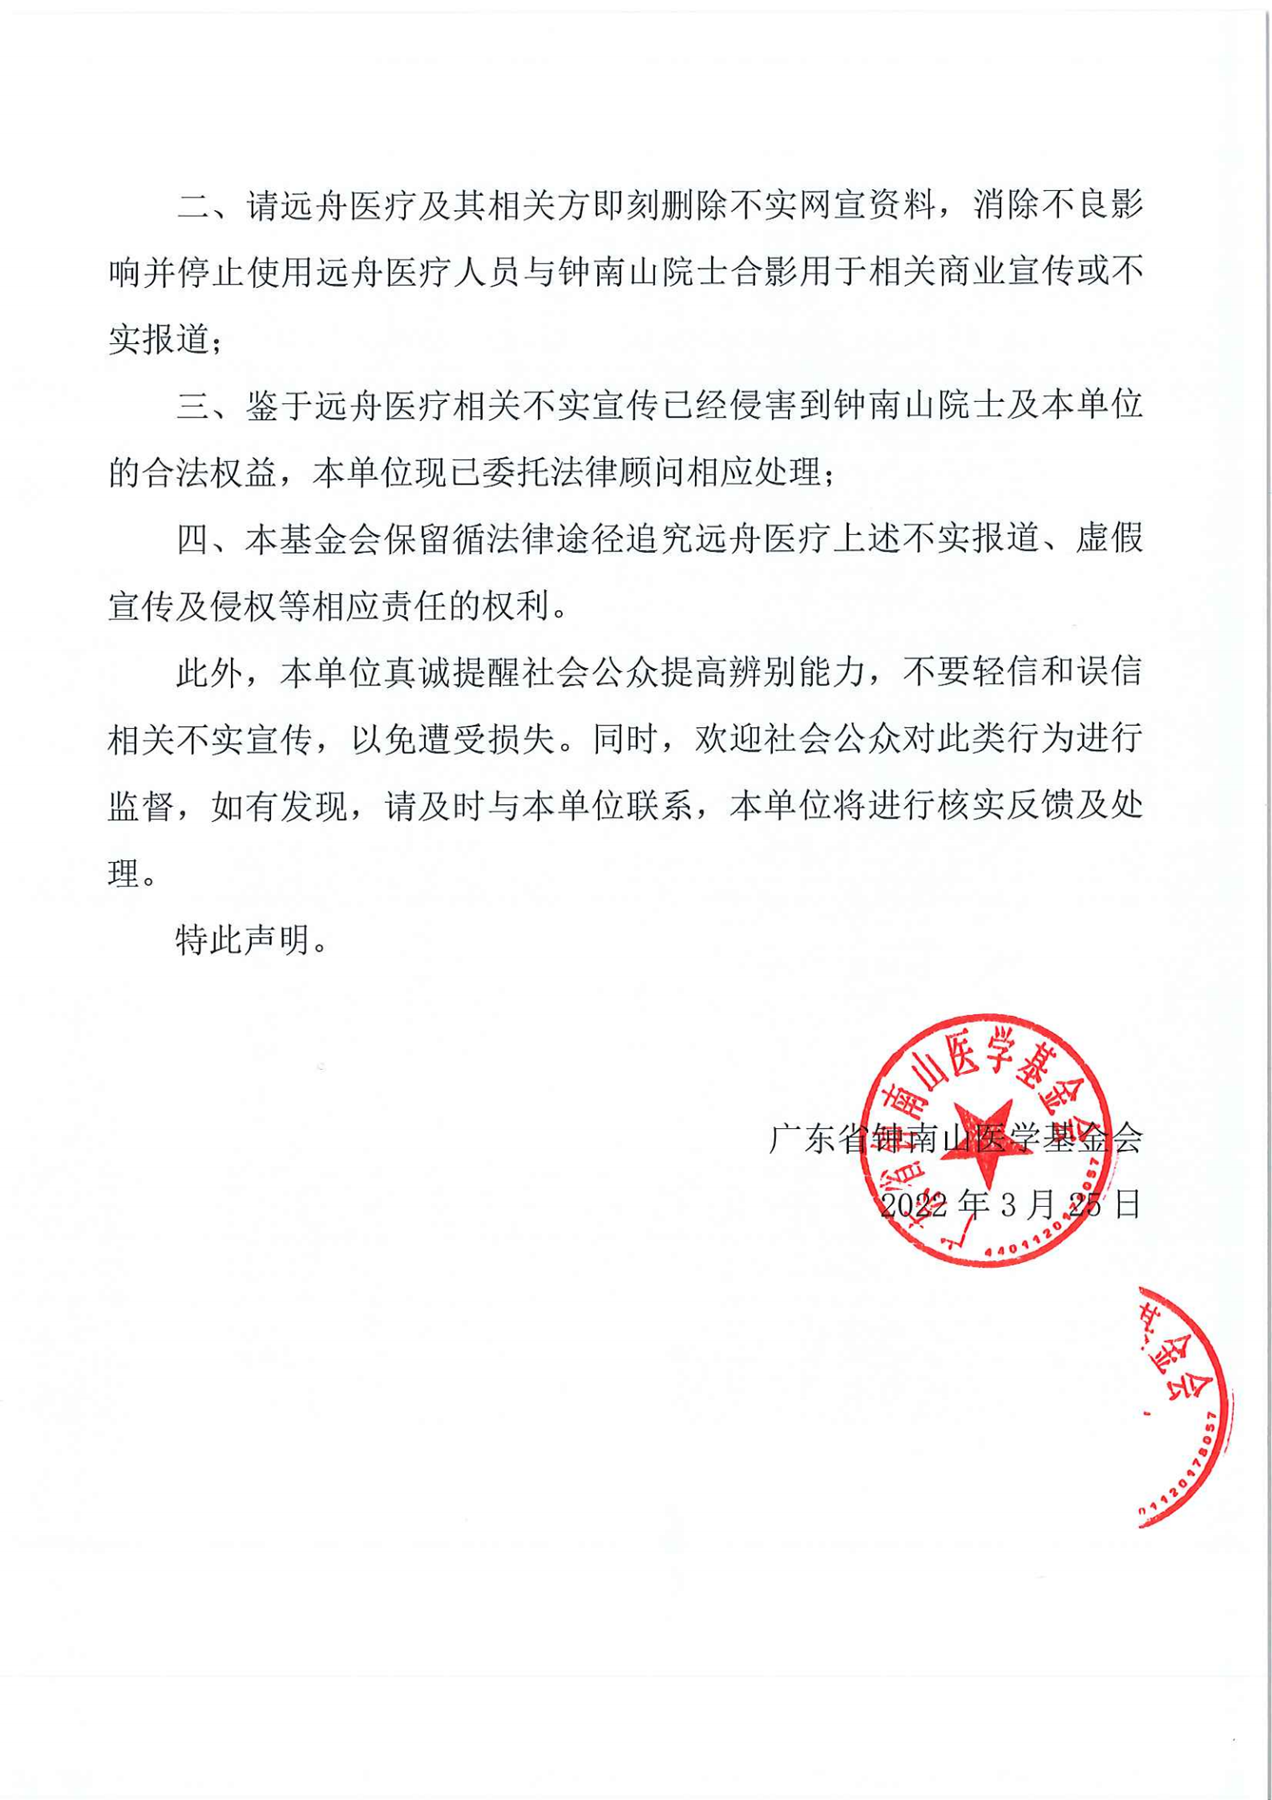 关于杭州远舟医疗科技有限公司相关不实宣传的严正声明_01.png